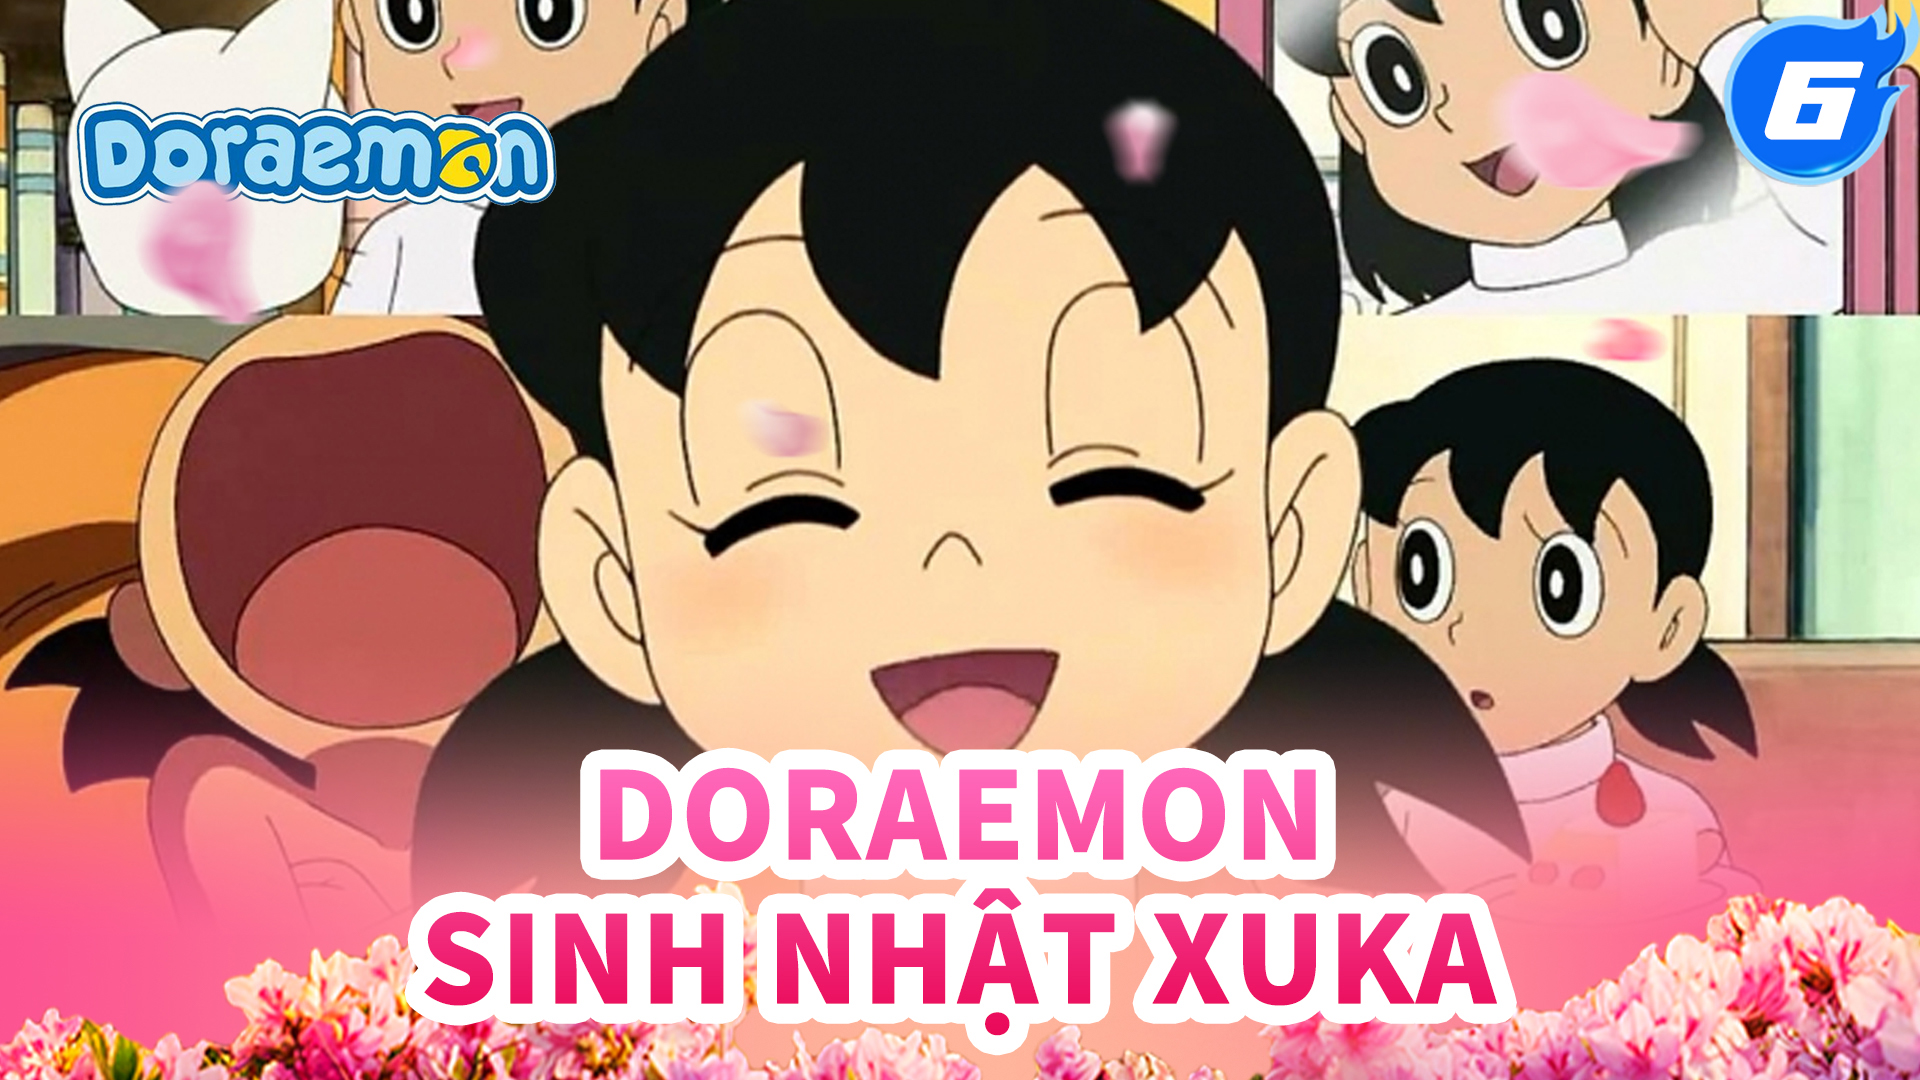 Phim hoạt hình Doremon tập 33b Sinh nhật nguy hiểm của Nobita